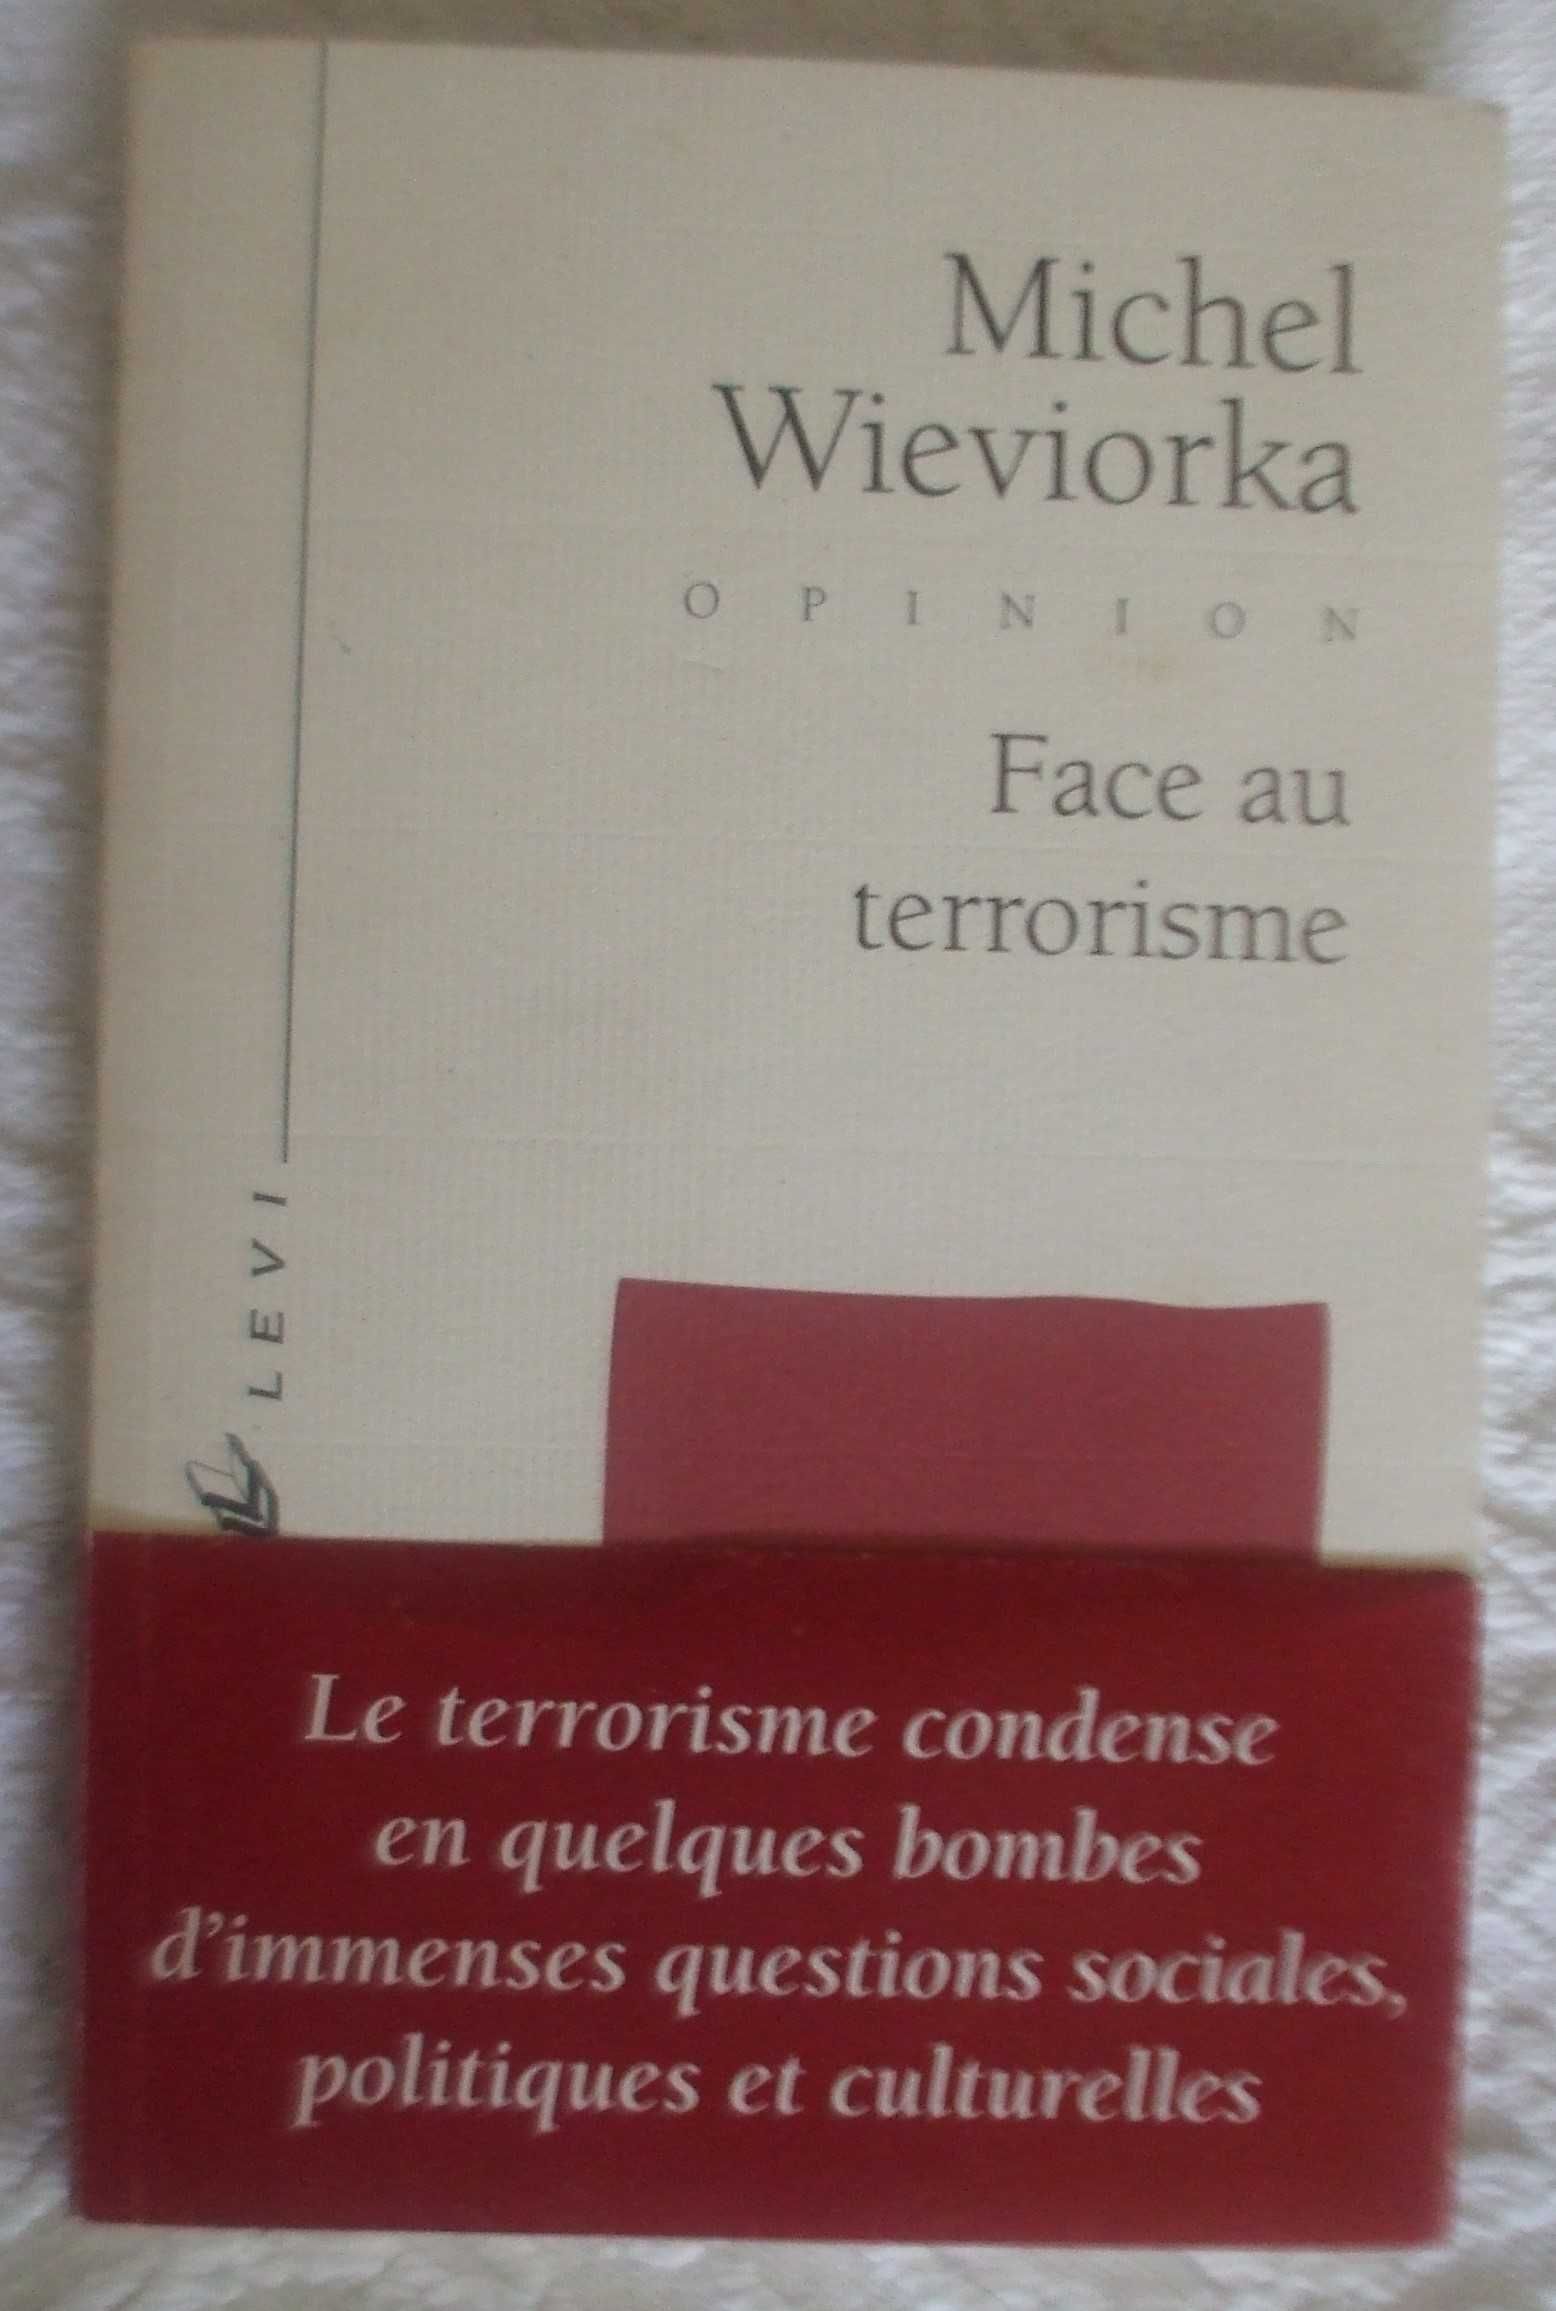 Face au terrorisme, Michel Wieviorka